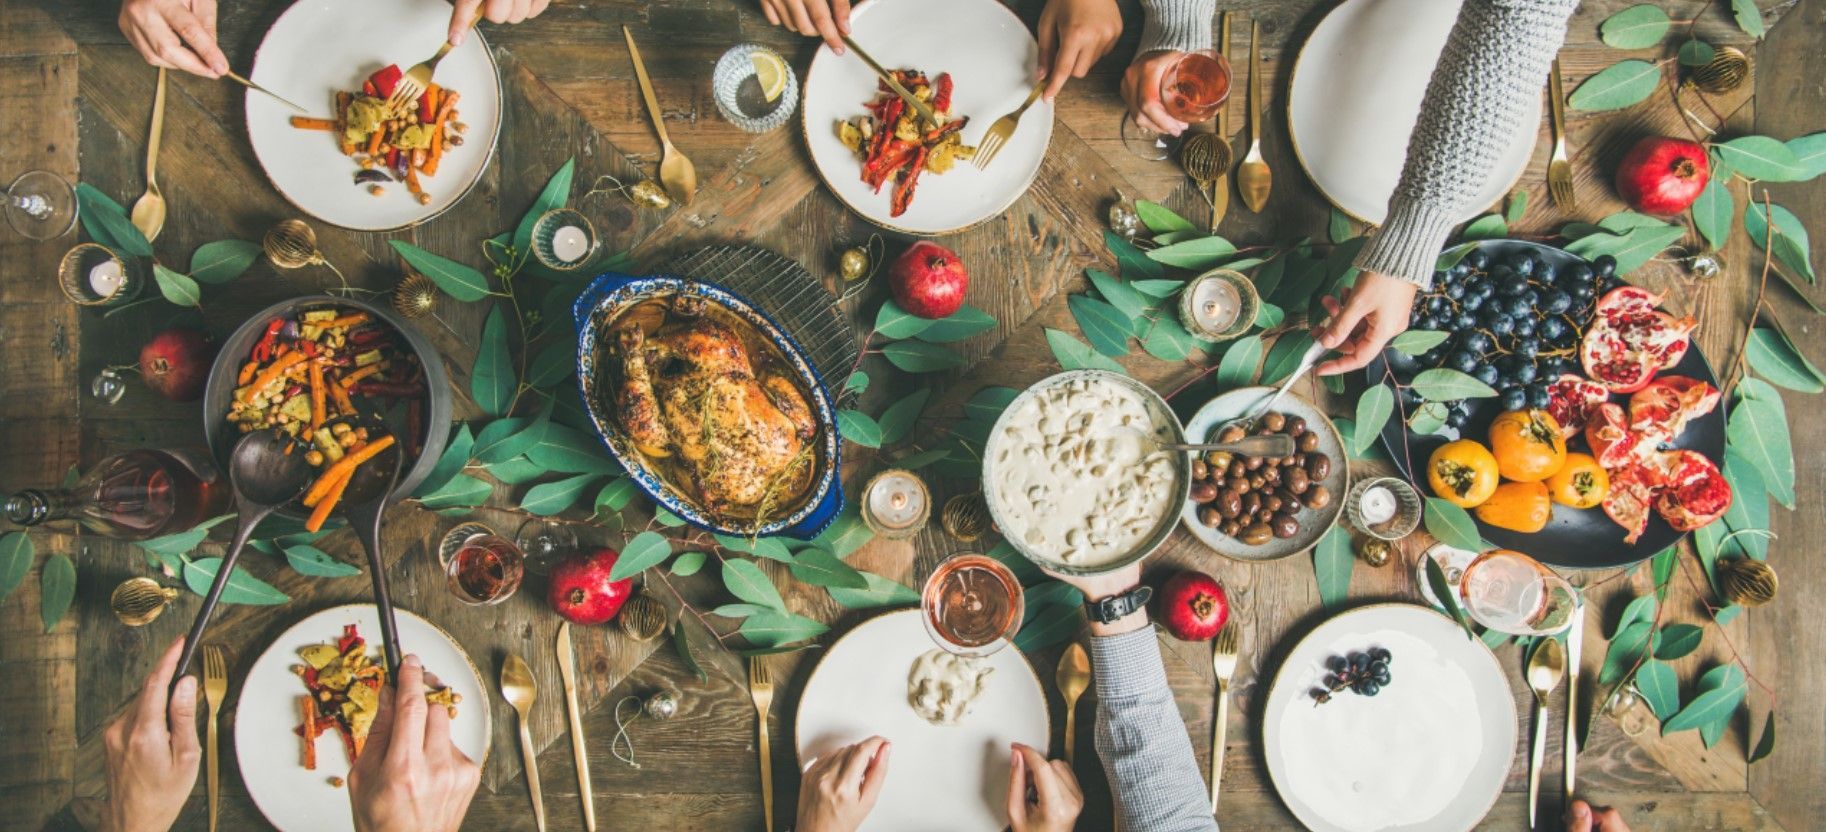 Как сделать новогодний стол здоровым: рецепты полезных блюд, которые понравятся всем